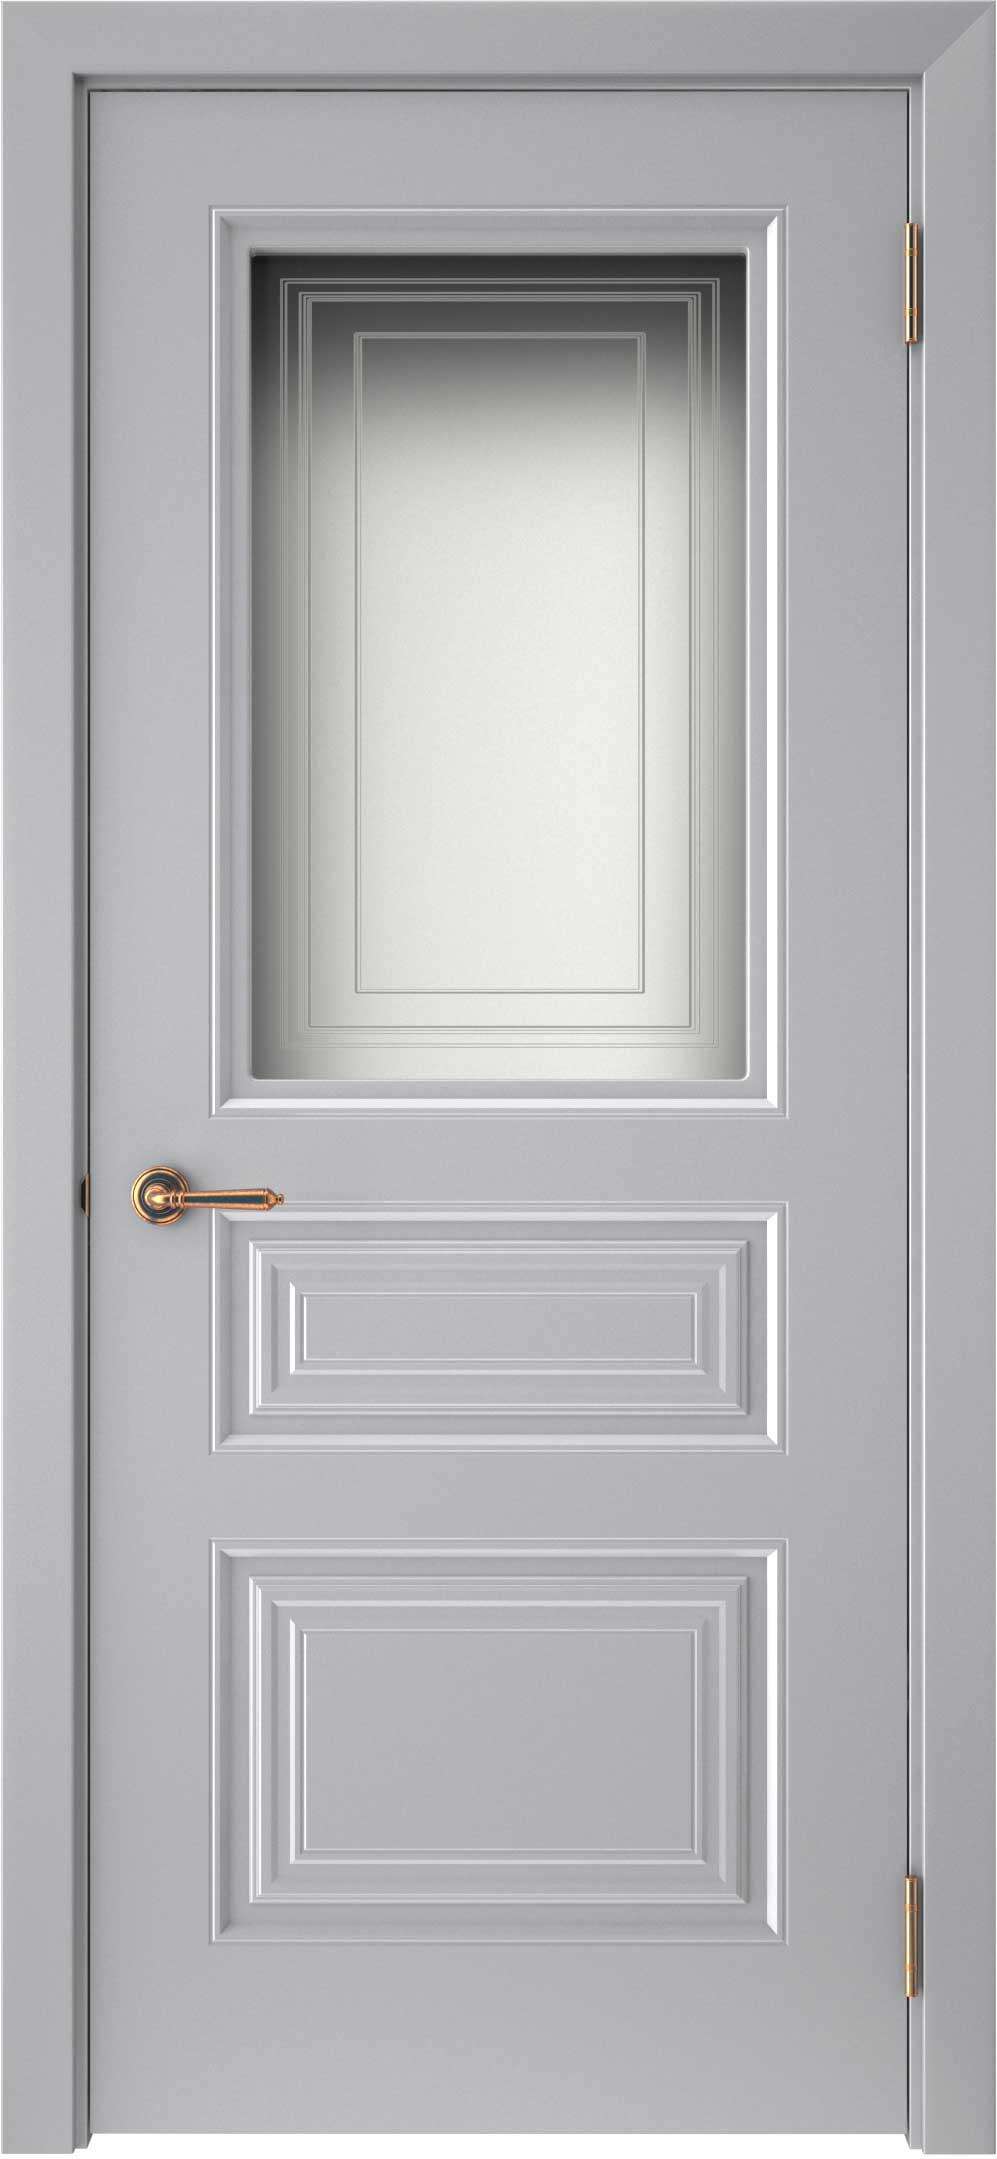 Двери крашеные (Эмаль) ТЕКОНА Смальта-44 со стеклом Серый ral 7036 размер 200 х 60 см. артикул F0000093311